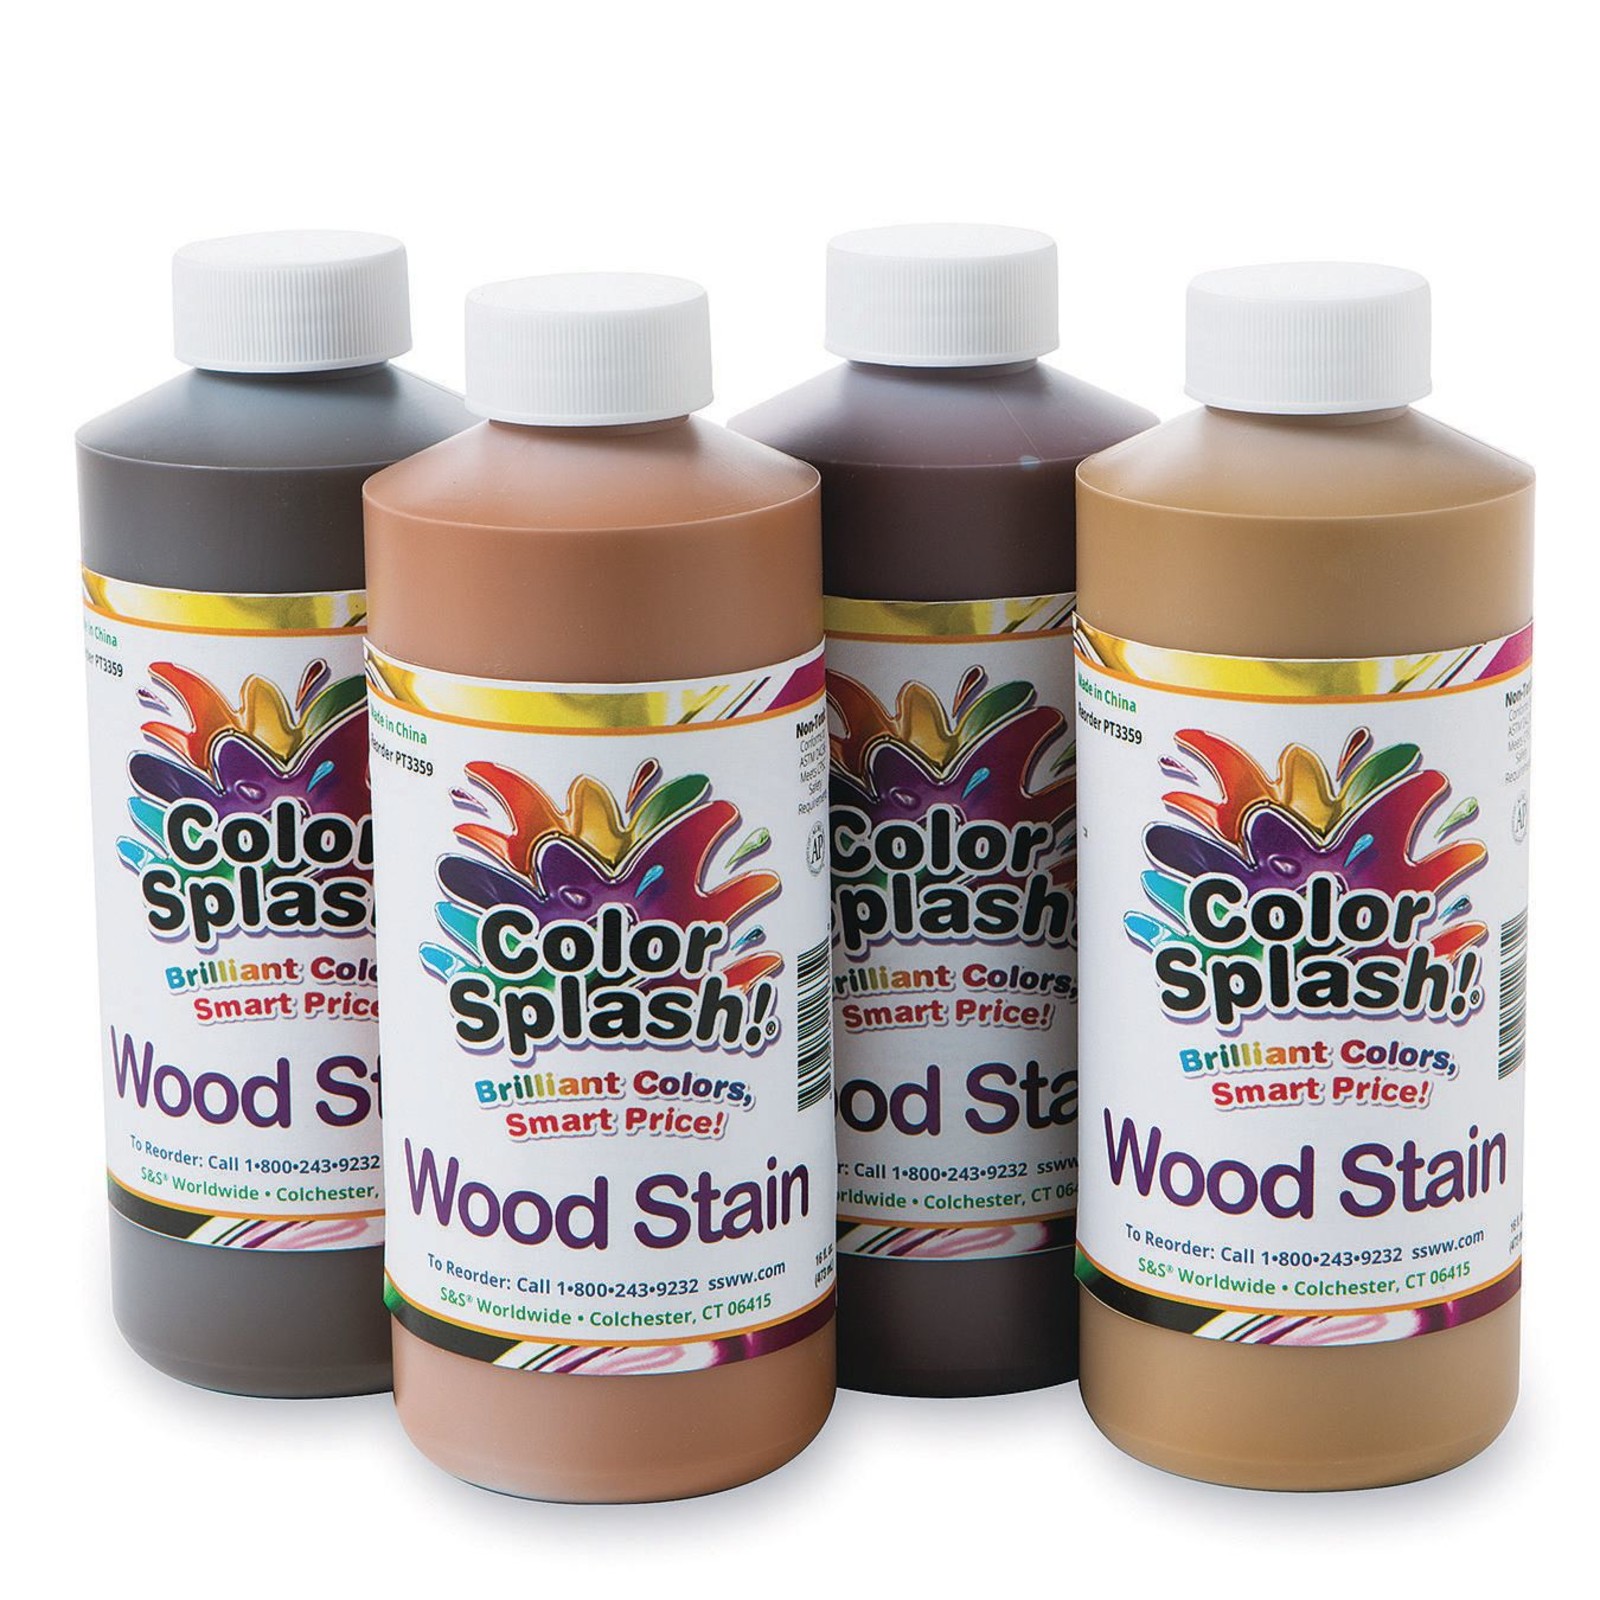 Color Splash!® 4 Color Gel Based Wood Stain Set